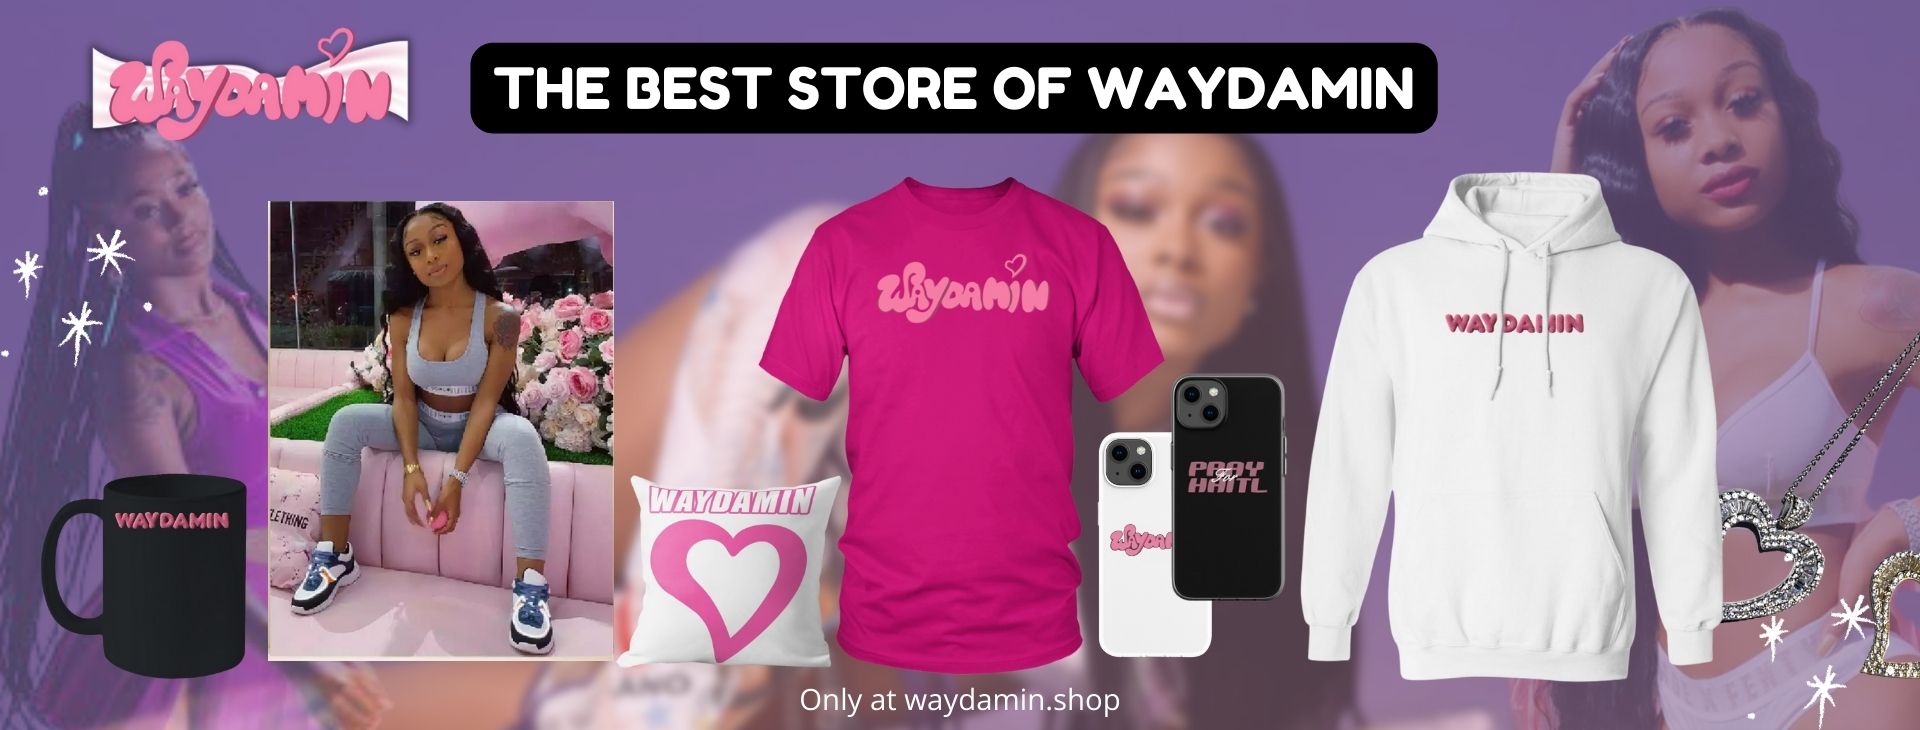 Waydamin Banner - Waydamin Shop